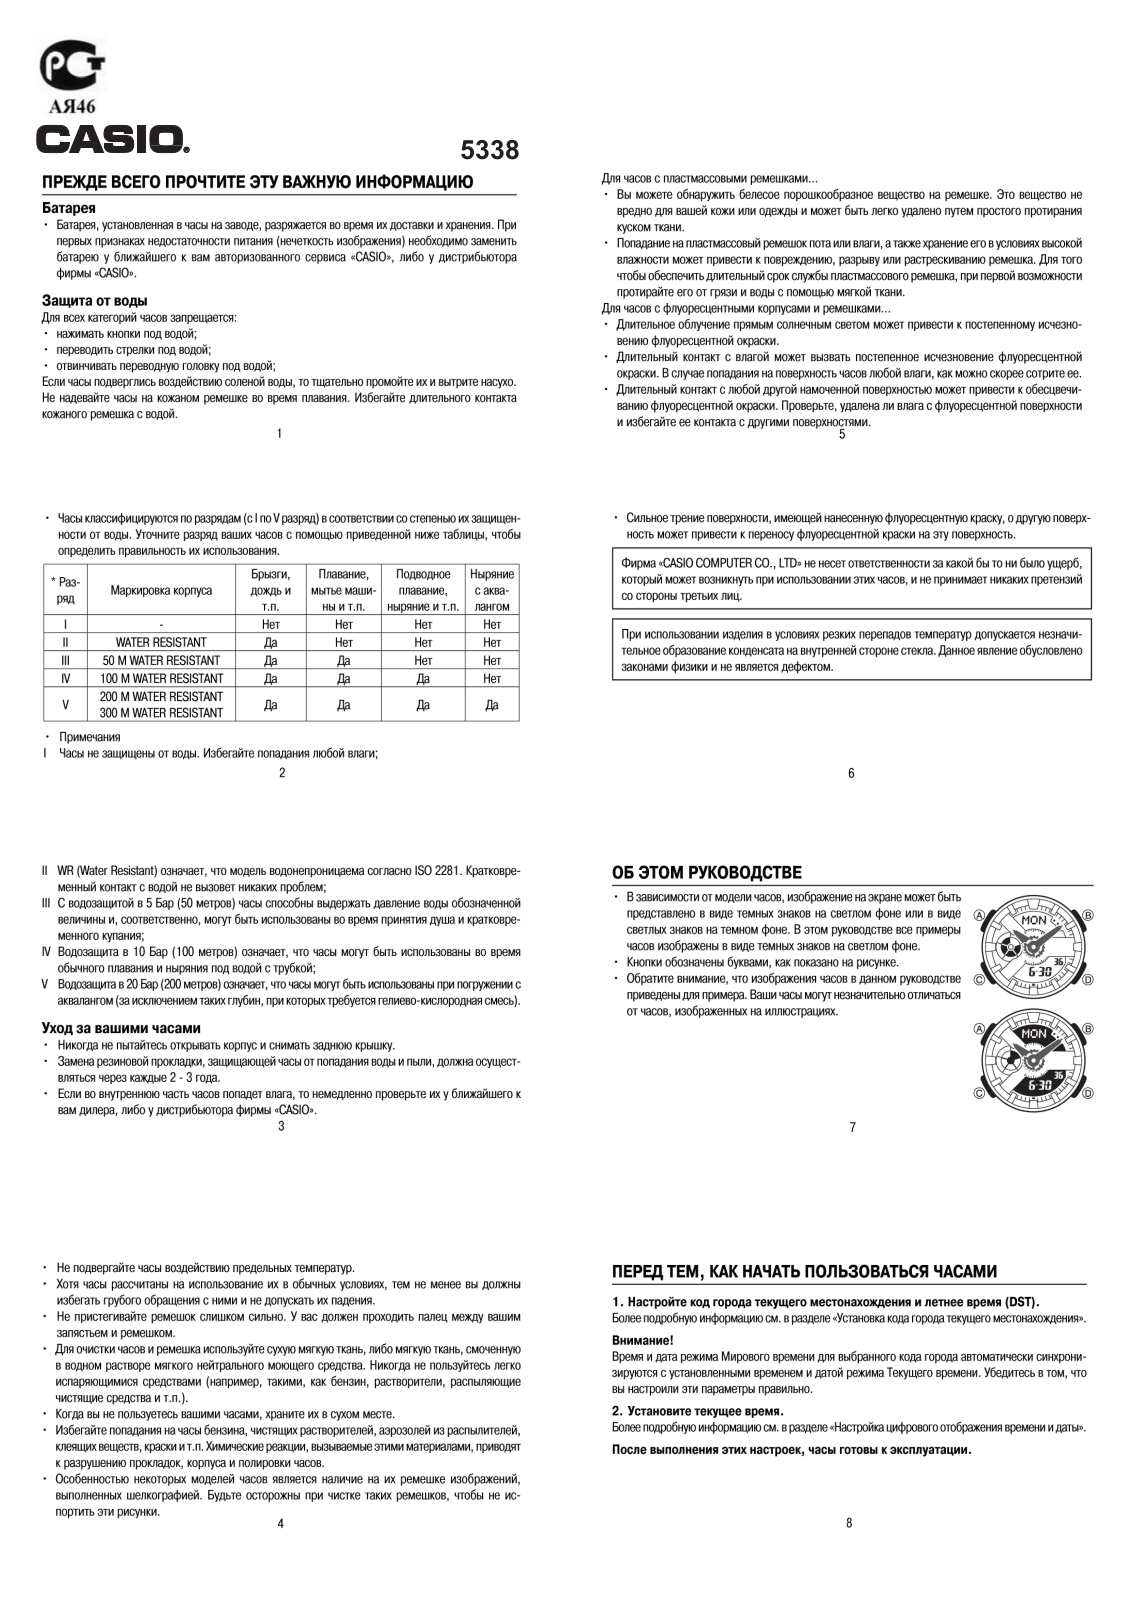 Casio BA-110PP-7A2 User Manual